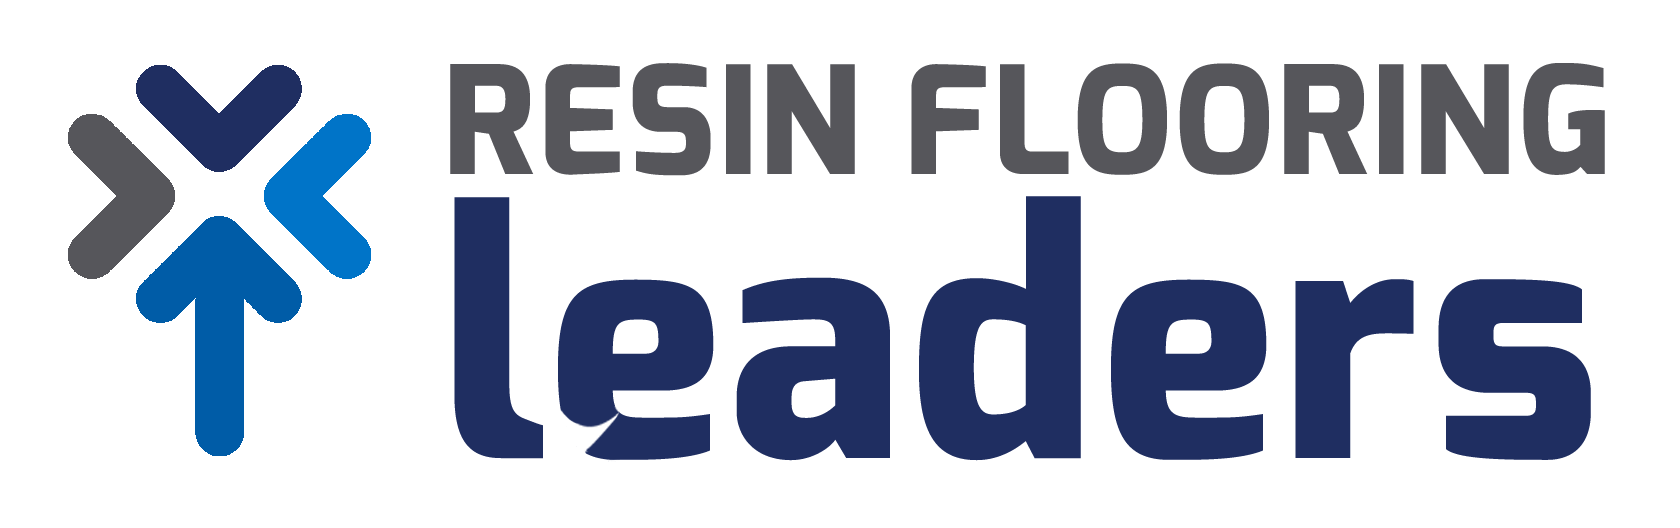 Resin Flooring Leaders